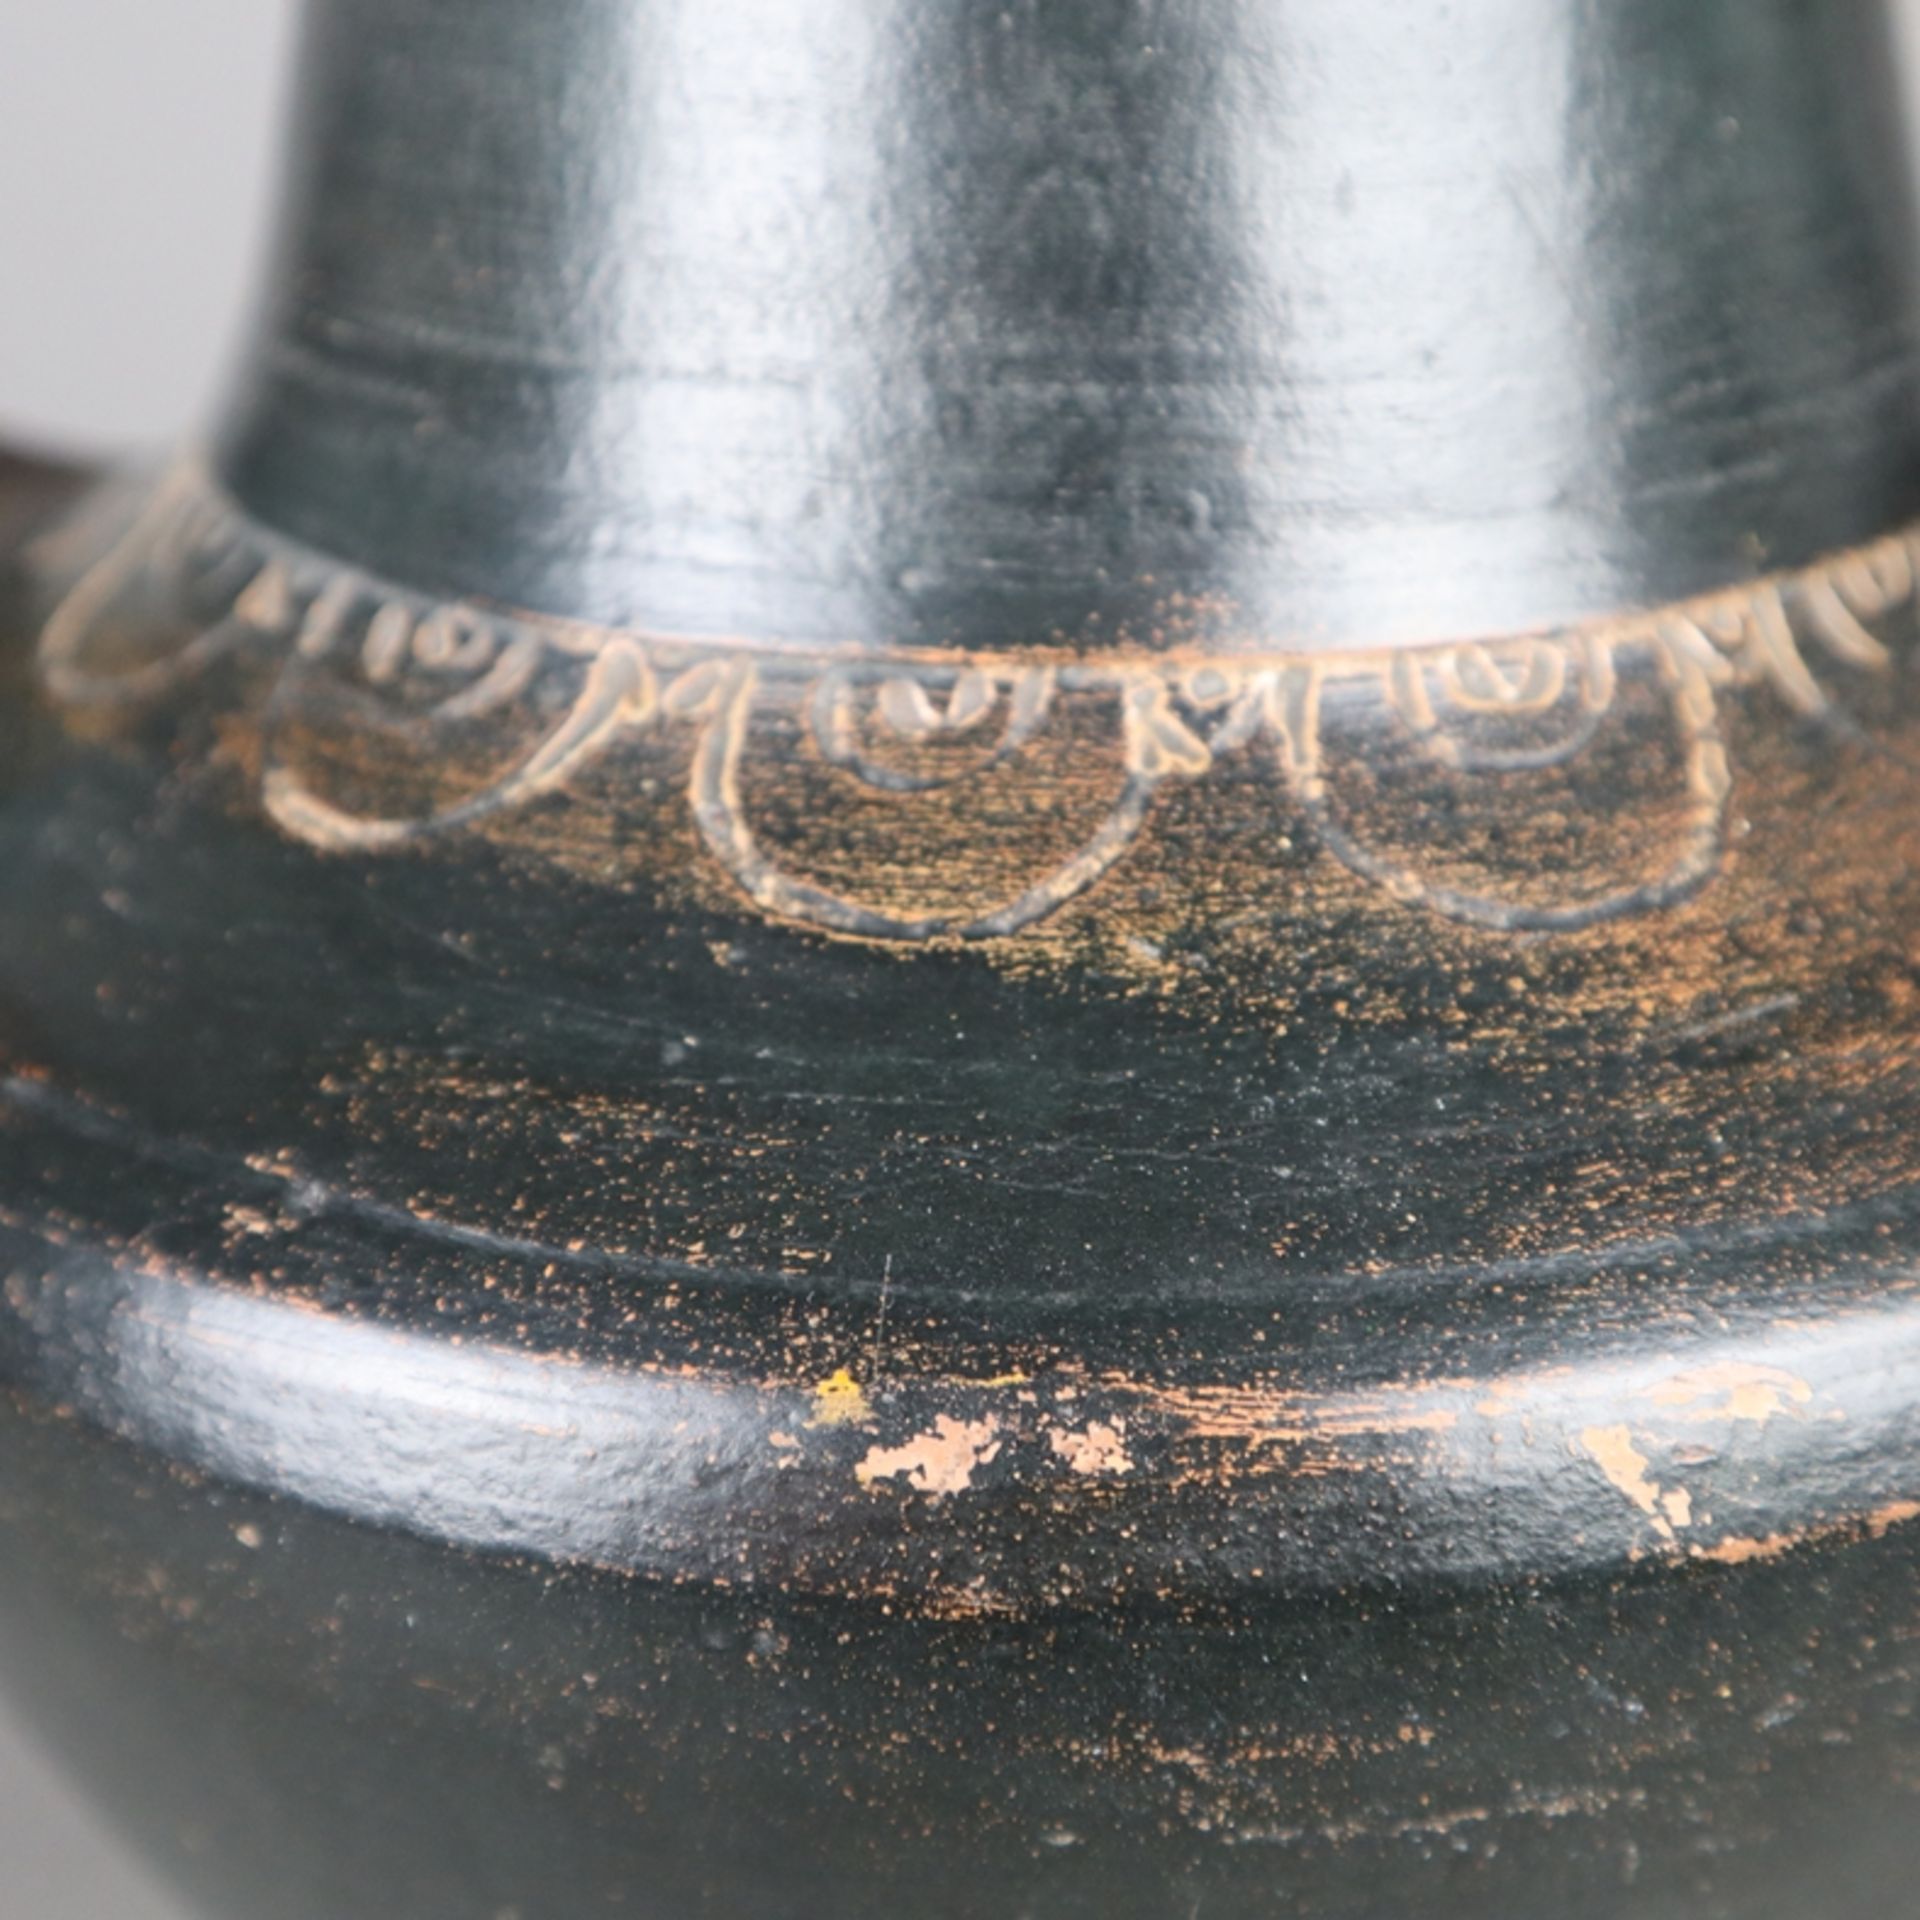 Doppelhenkel-Vase - wohl Balkan, 19.Jh. oder älter, Ton, braun glasiert, umlaufend Ornamentborte, s - Bild 5 aus 9